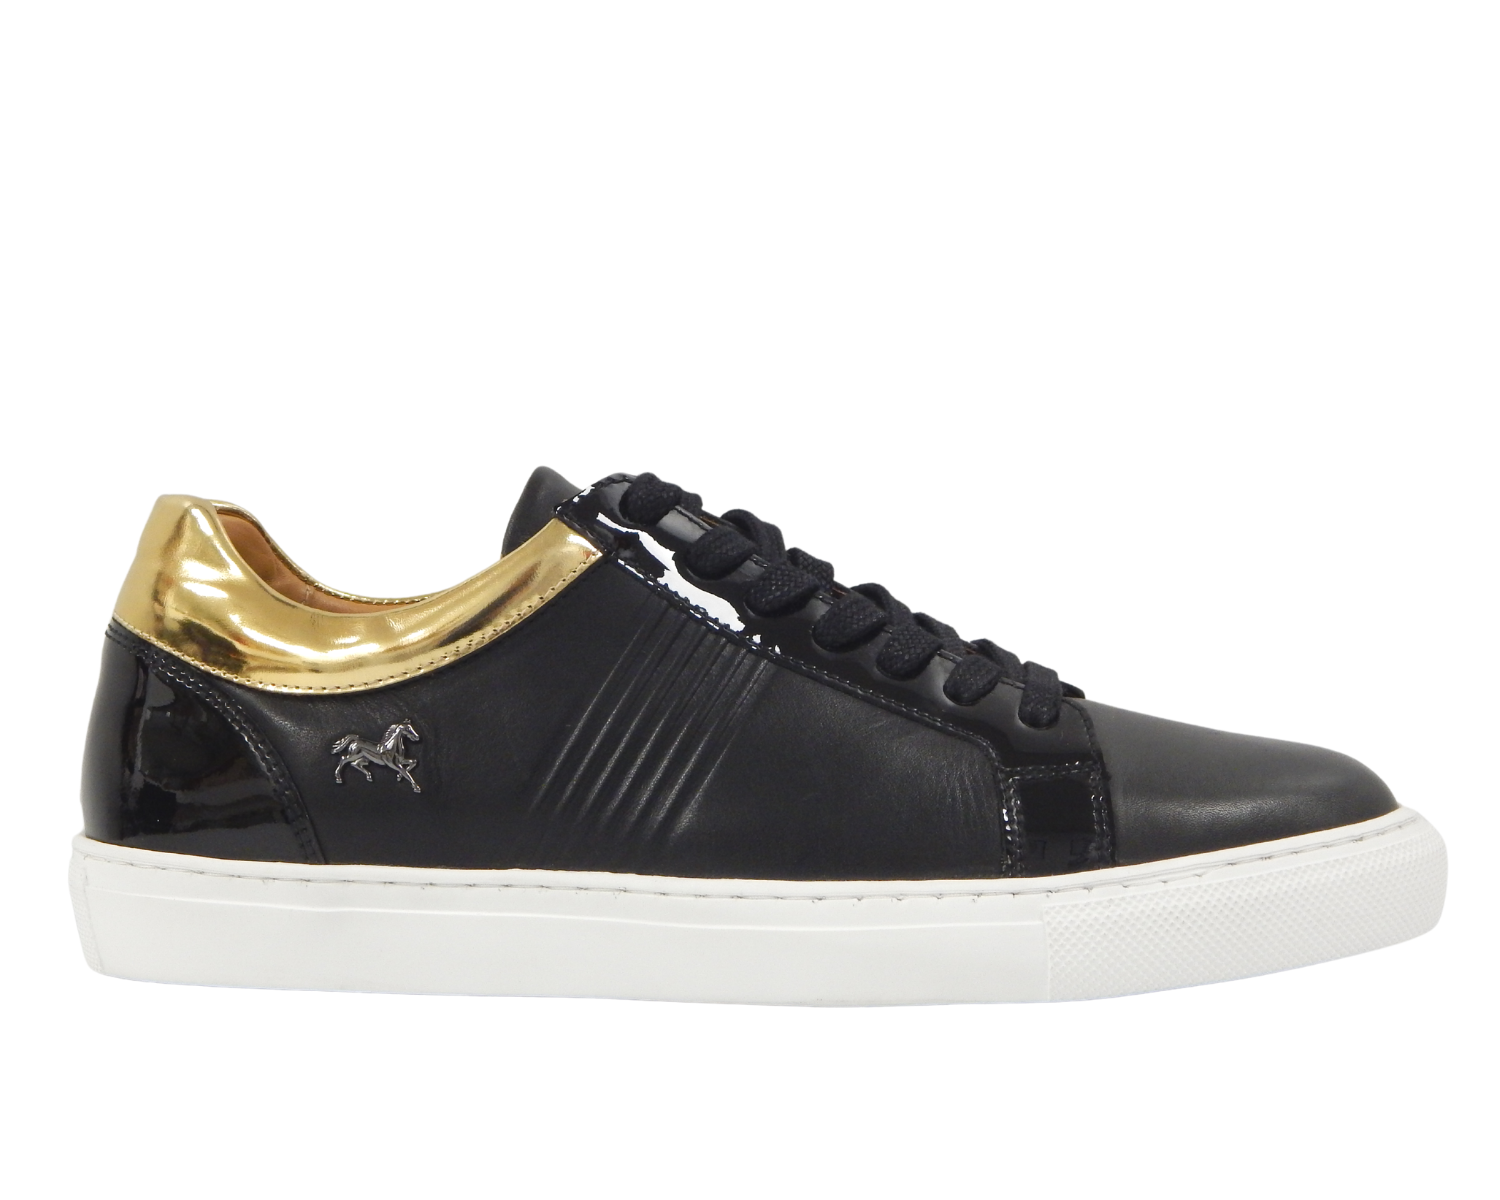 Cavalinho Sneaker - Size 9 - Black - 1_fae8a584-1975-414d-b2e8-5c8611214e8b